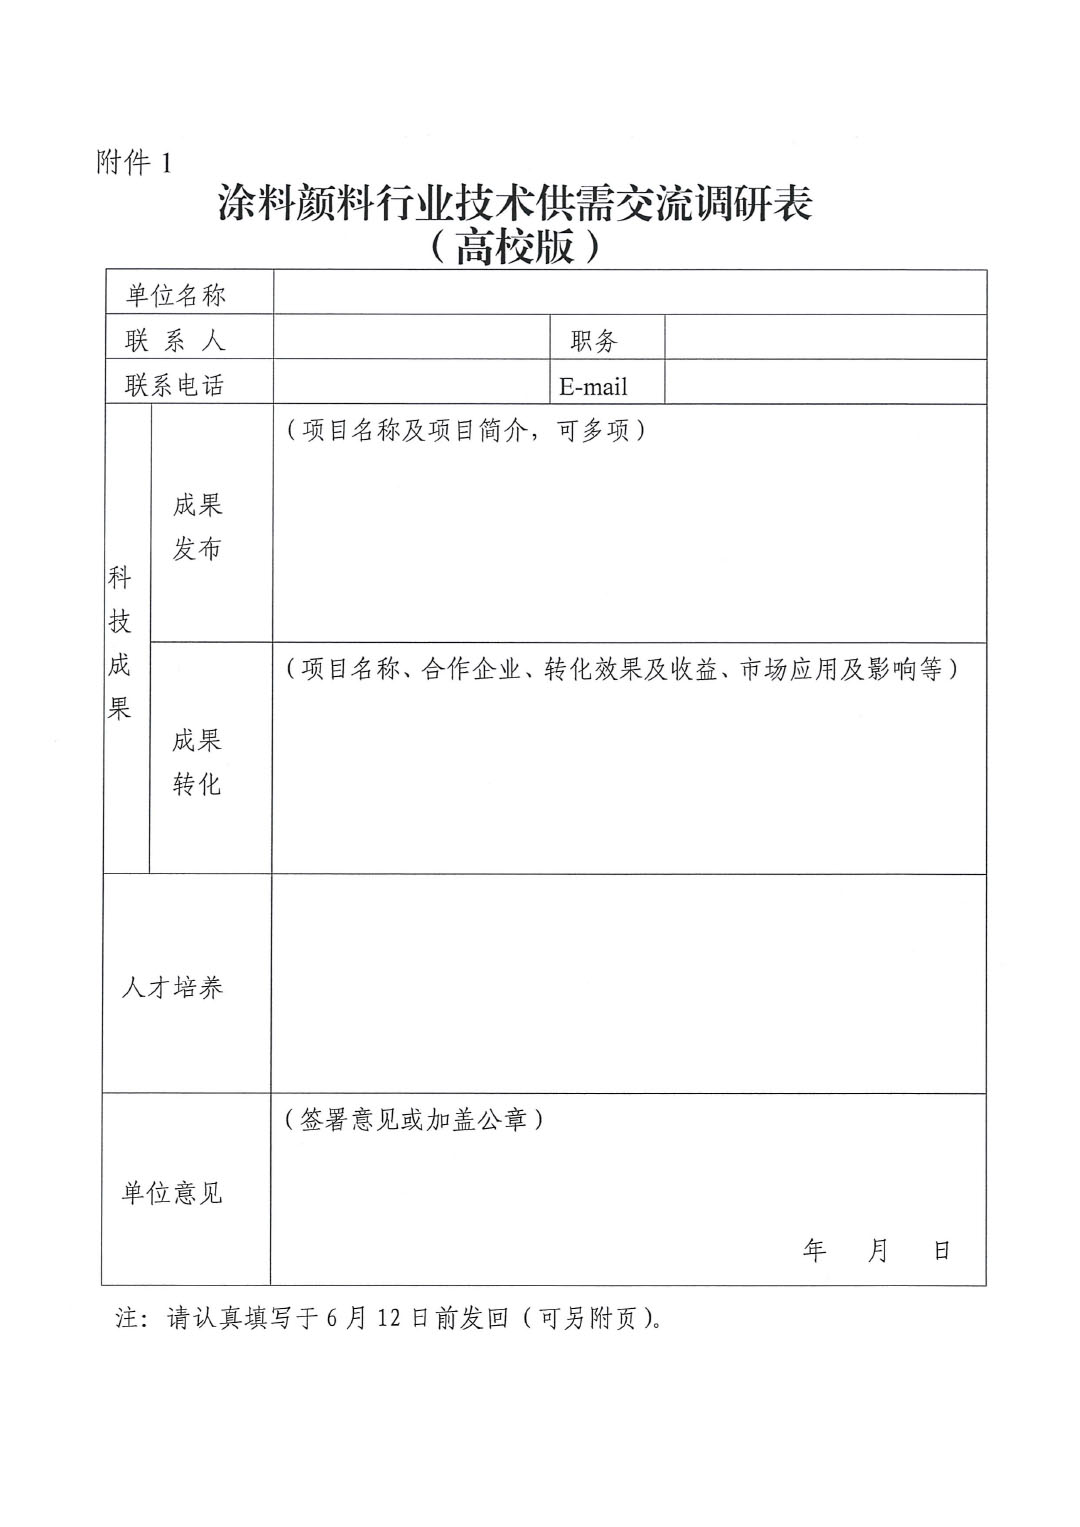 中国涂料行业产学研用及成果转化对接交流会的通知0430-3